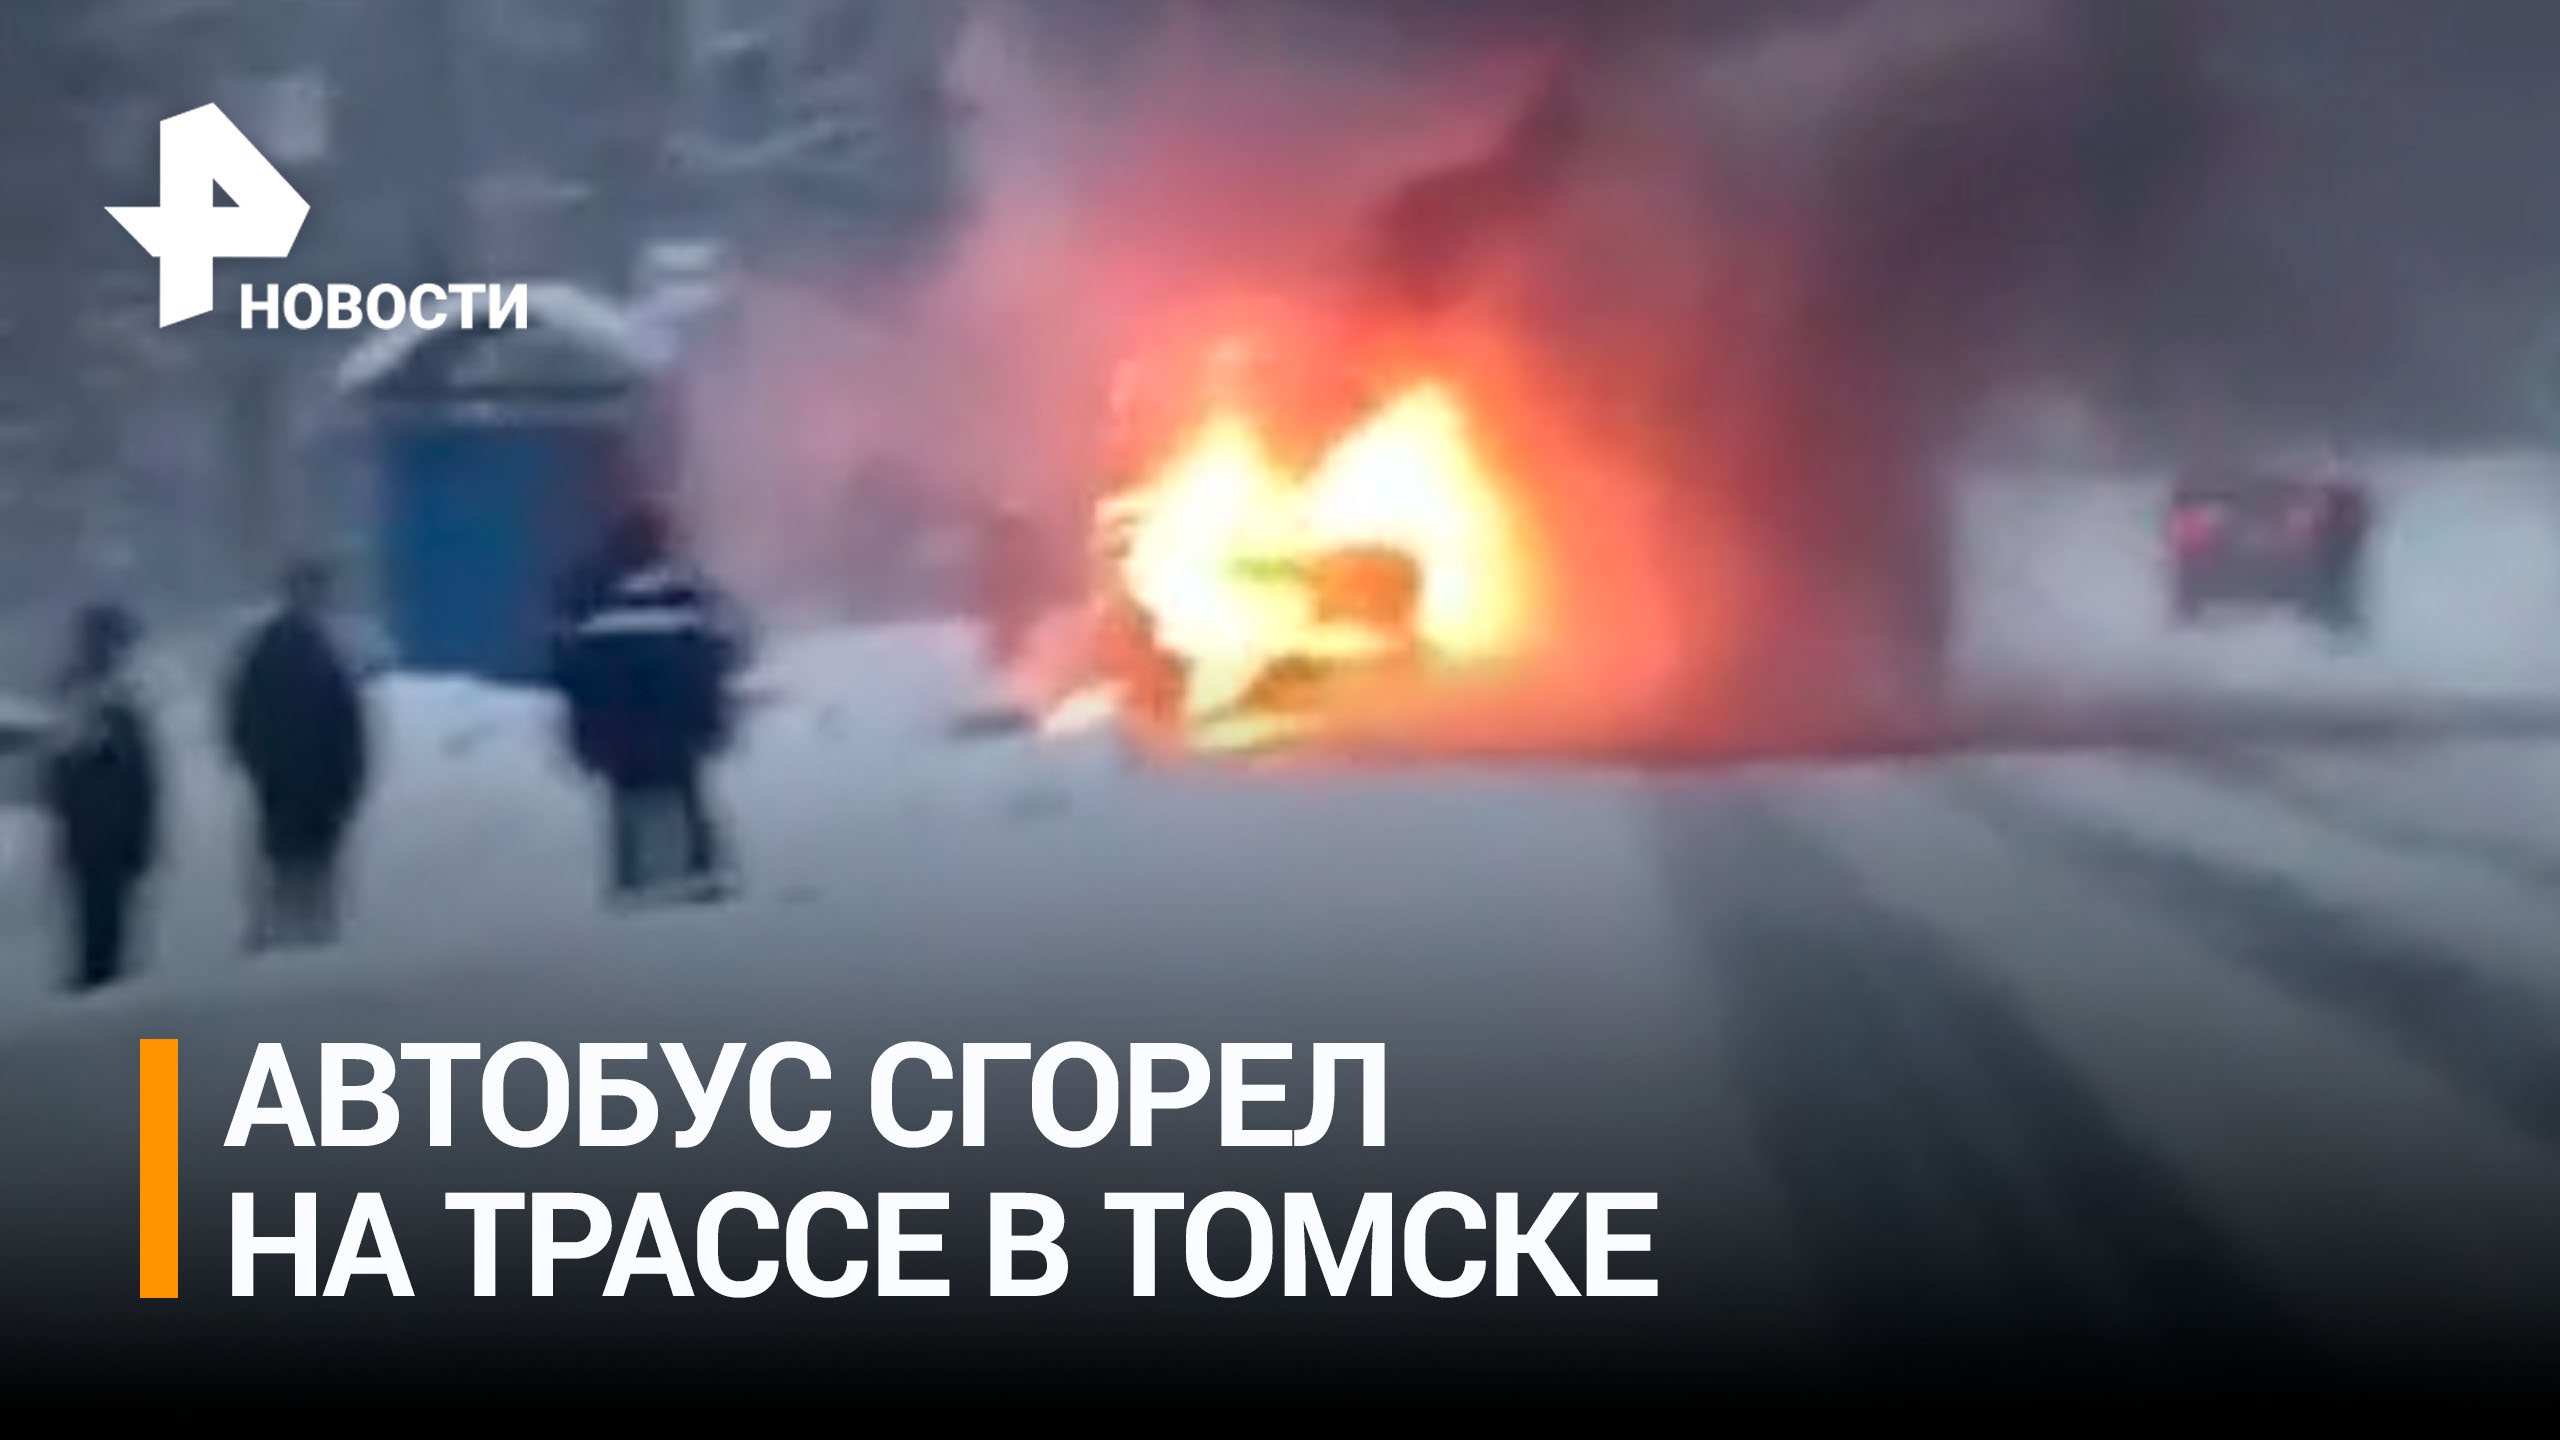 Автобус сгорел на трассе в Томске / РЕН Новости